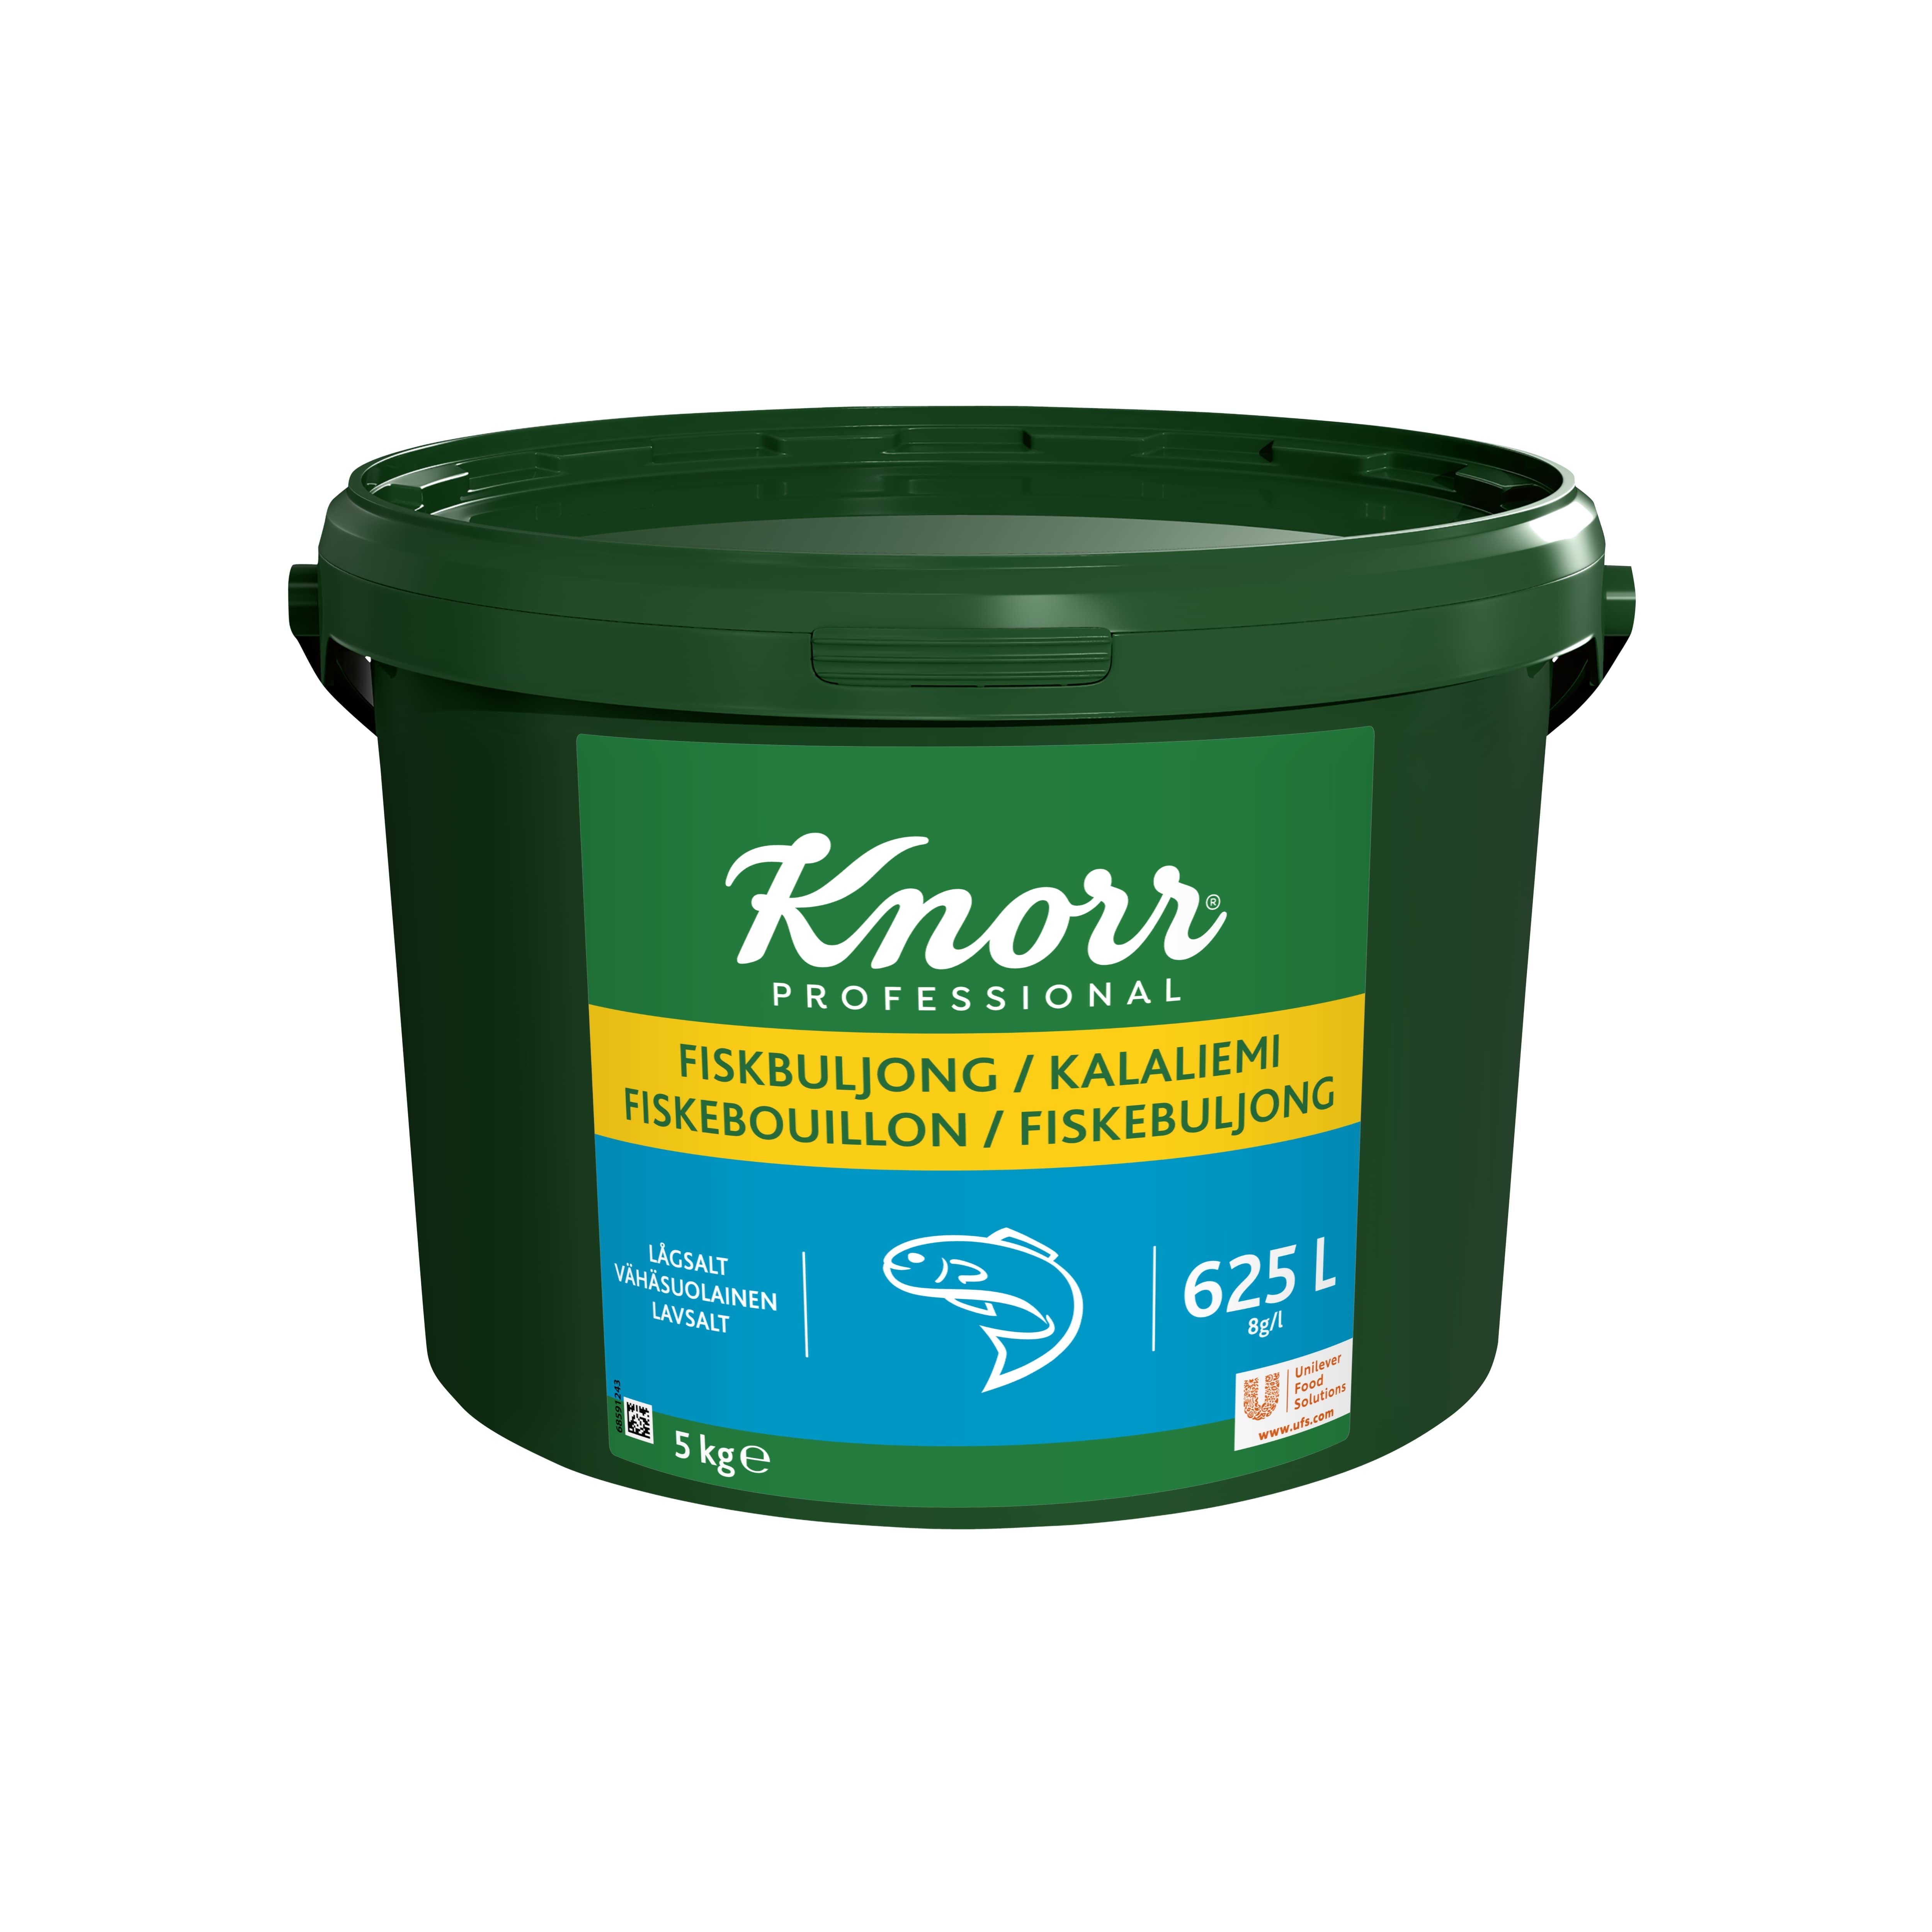 Knorr Kalaliemi vähäsuolainen 5 kg/ 625 L